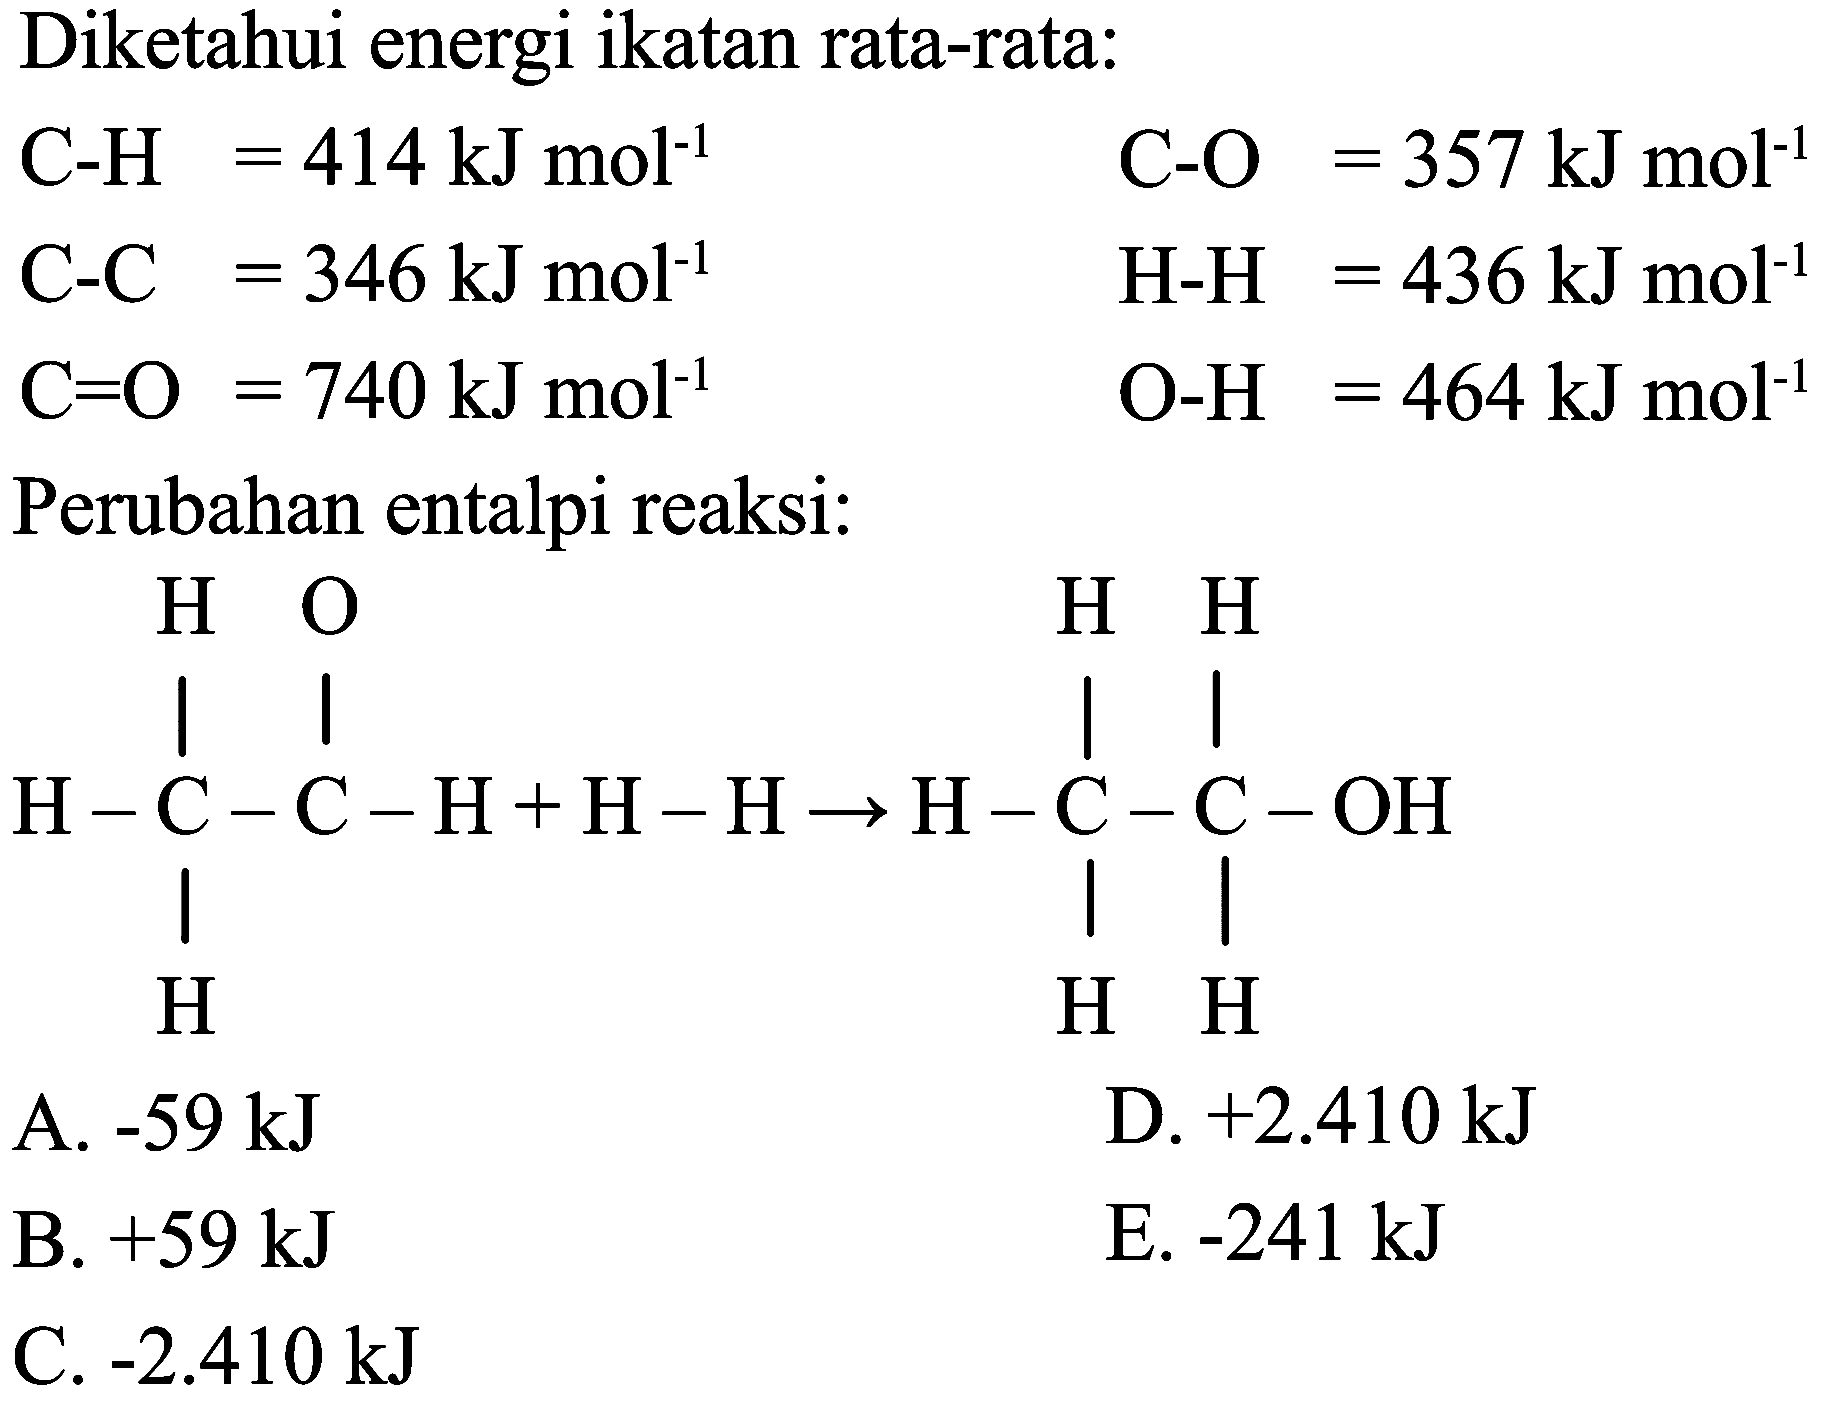 Diketahui energi ikatan rata-rata:


C-H  =414 ~kJ mol^(-1)  C-O=357 ~kJ mol^(-1) 
C-C  =346 ~kJ mol^(-1)  H-H=436 ~kJ mol^(-1) 
C=O=740 ~kJ mol^(-1)  O-H  =464 ~kJ mol^(-1)


Perubahan entalpi reaksi:
CCO
CCO